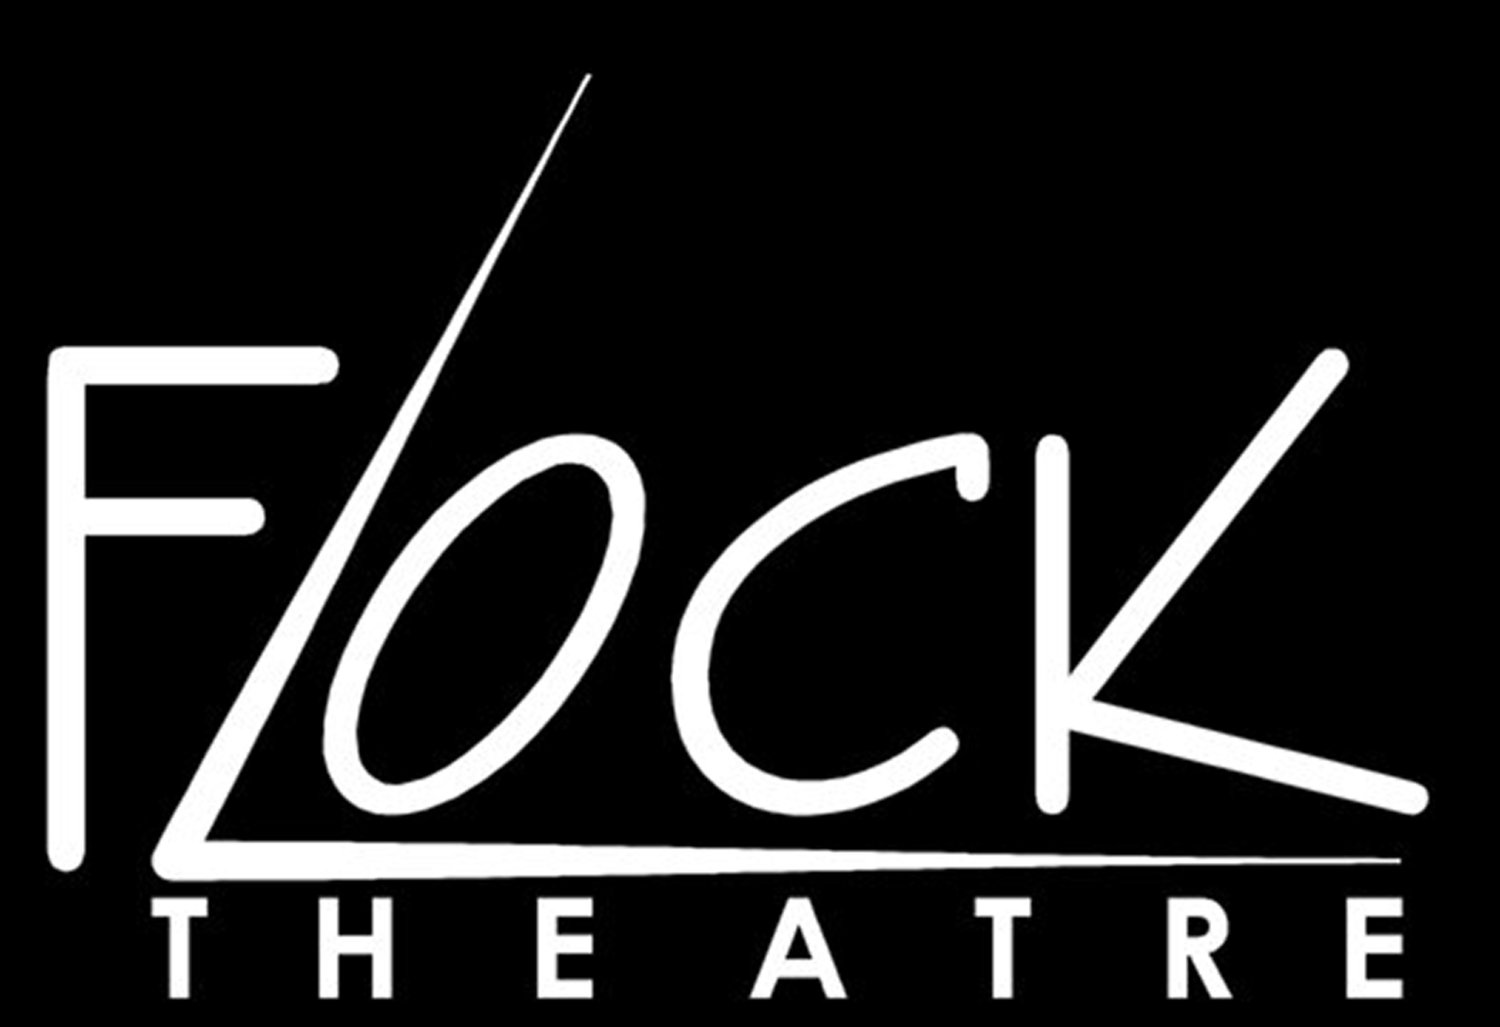 Flock Theatre